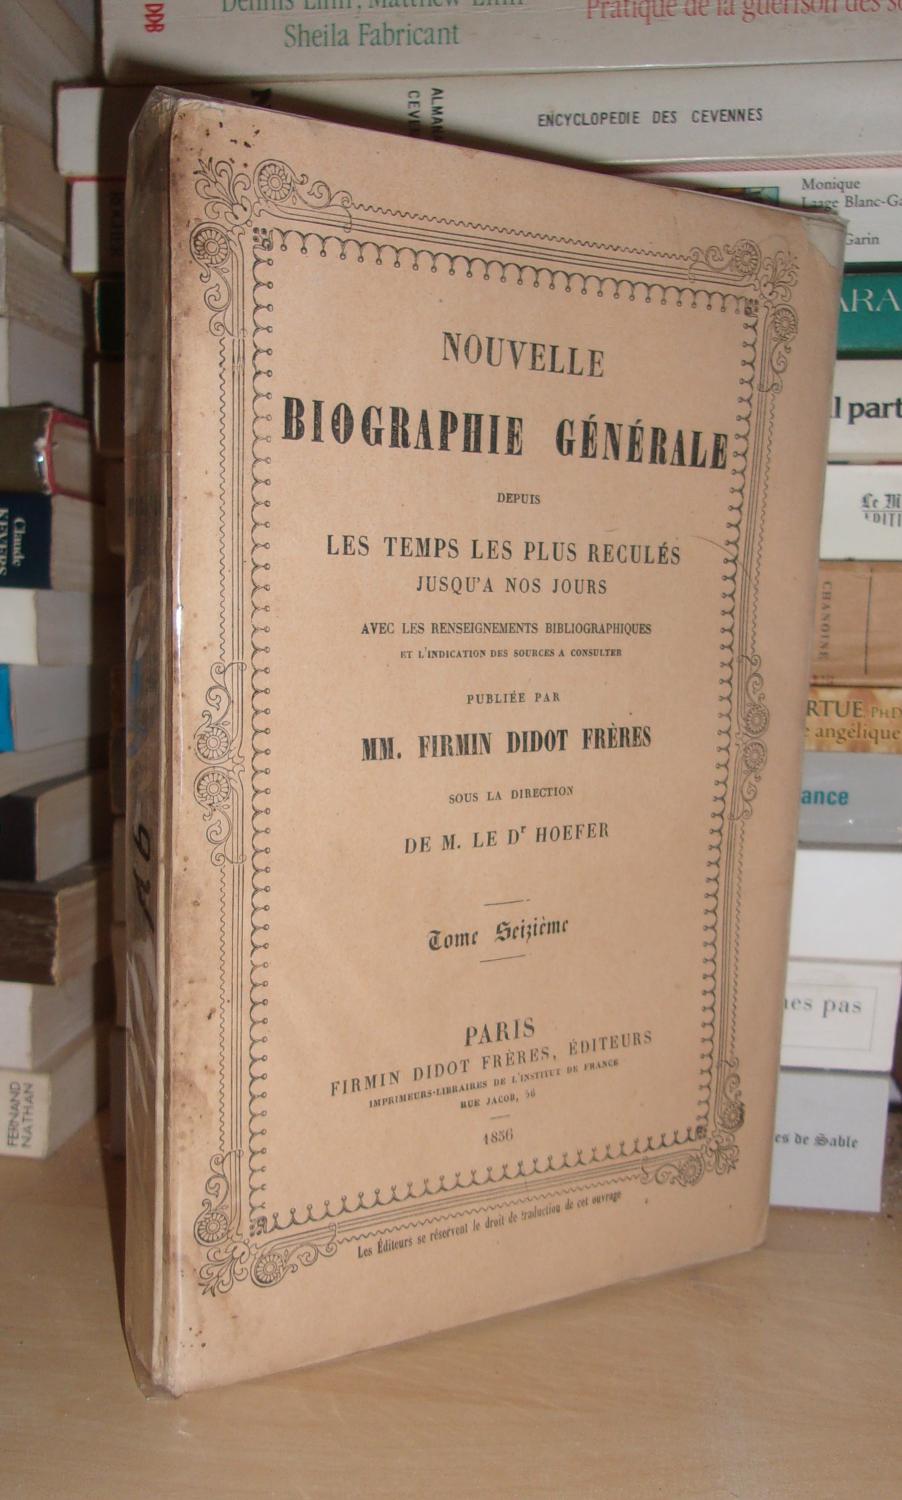 Nouvelle Biographie generale, depuis les temps les plus recules jusqu'a nos jours... Paris [1868]. 11 S. gr-8°. [BOOKS ON MUSIC]